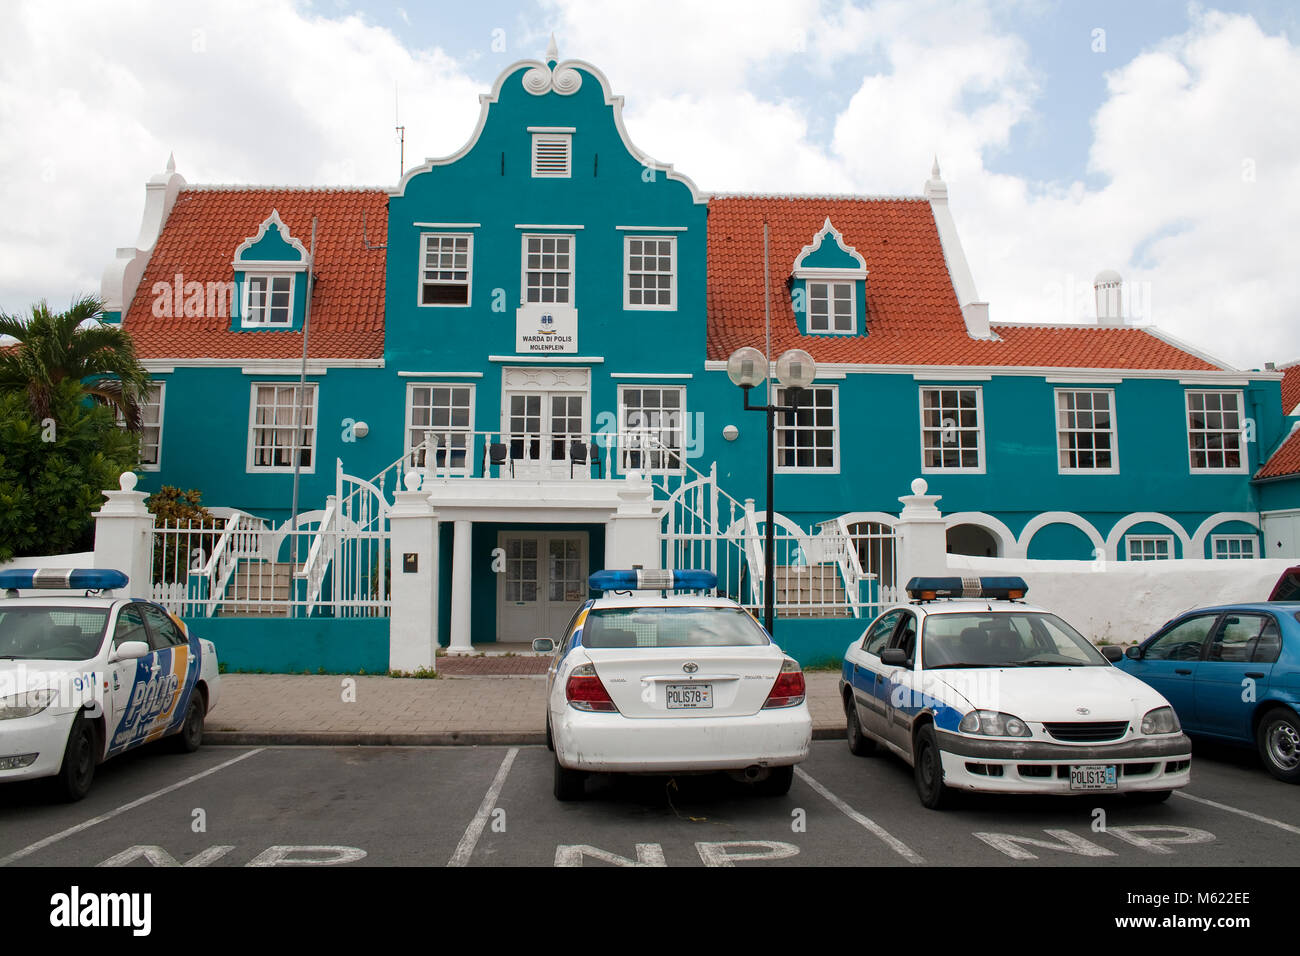 De Police, bâtiment historique typique, netherland-caraïbes style colonial, Punda district, Willemstad, Curaçao, Antilles néerlandaises, Amérique Banque D'Images